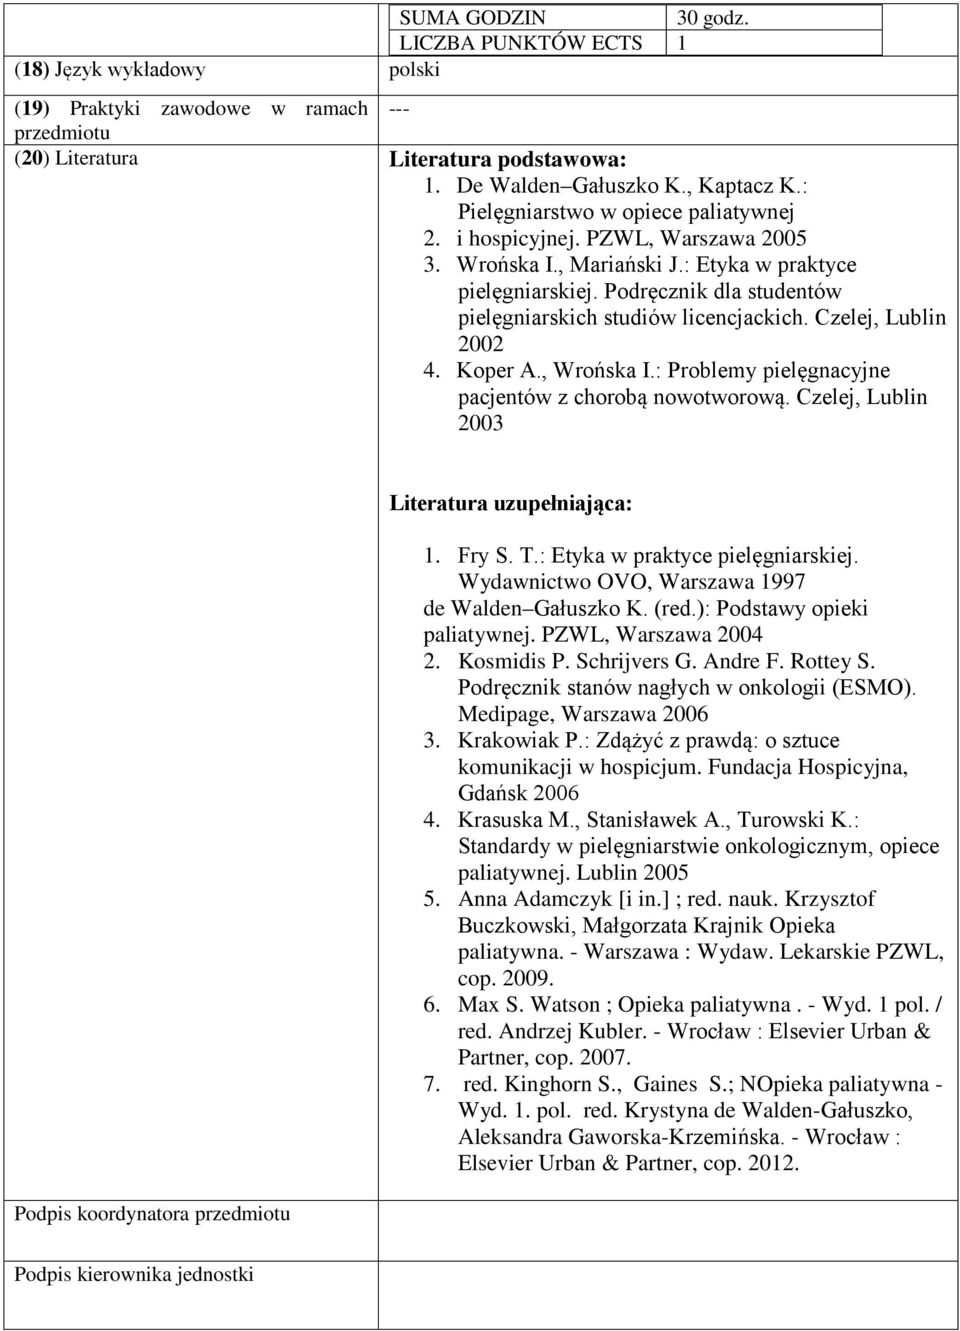 Podręcznik dla studentów pielęgniarskich studiów licencjackich. Czelej, Lublin 2002 4. Koper A., Wrońska I.: Problemy pielęgnacyjne pacjentów z chorobą nowotworową.